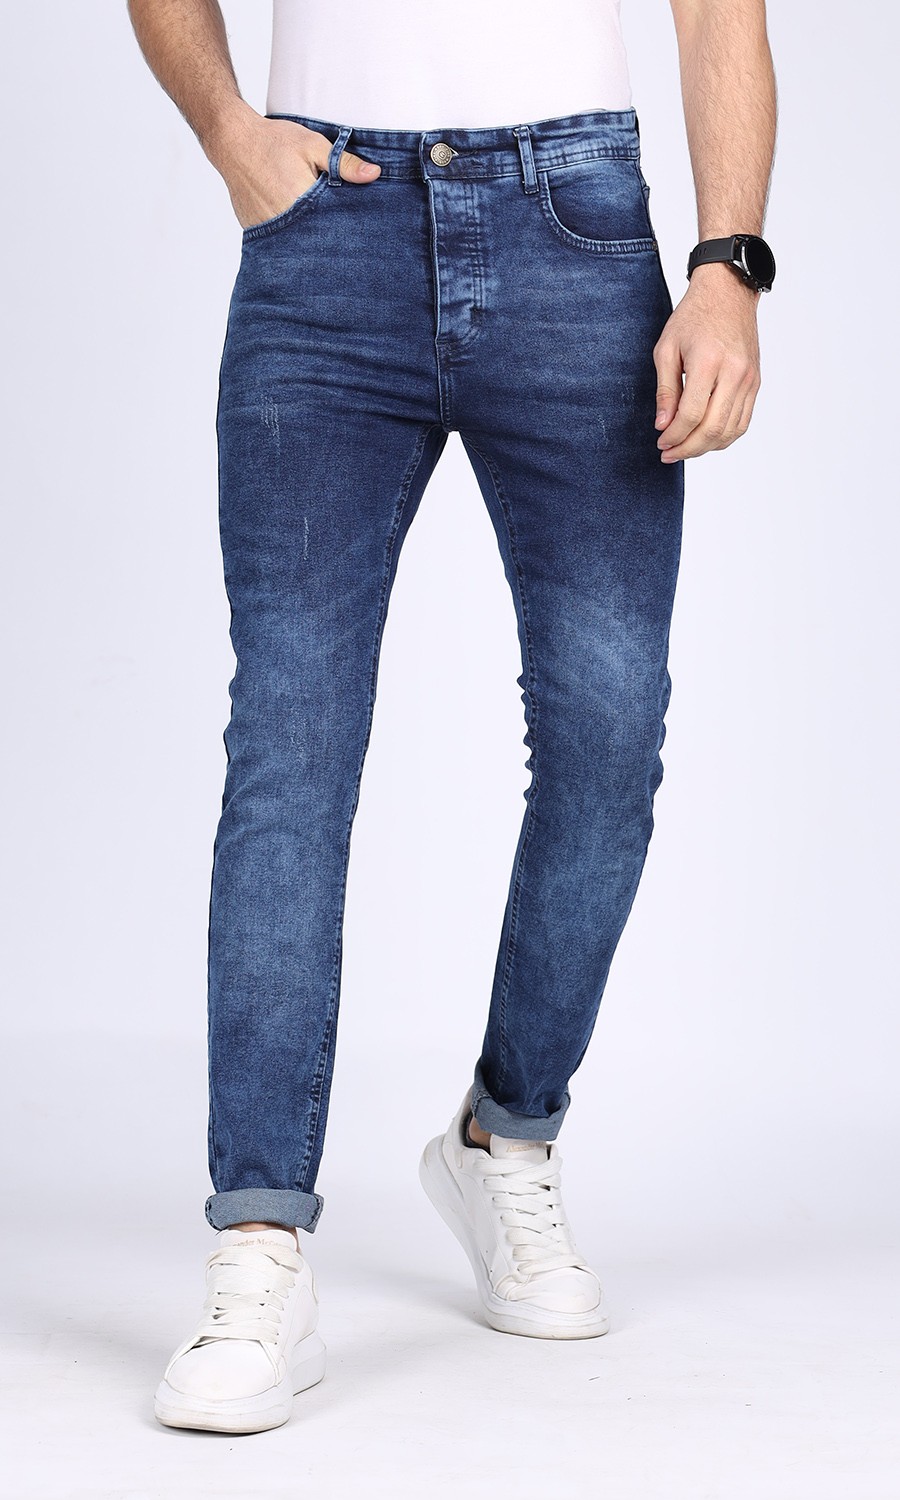 Basic five P. Jeans |M . blue